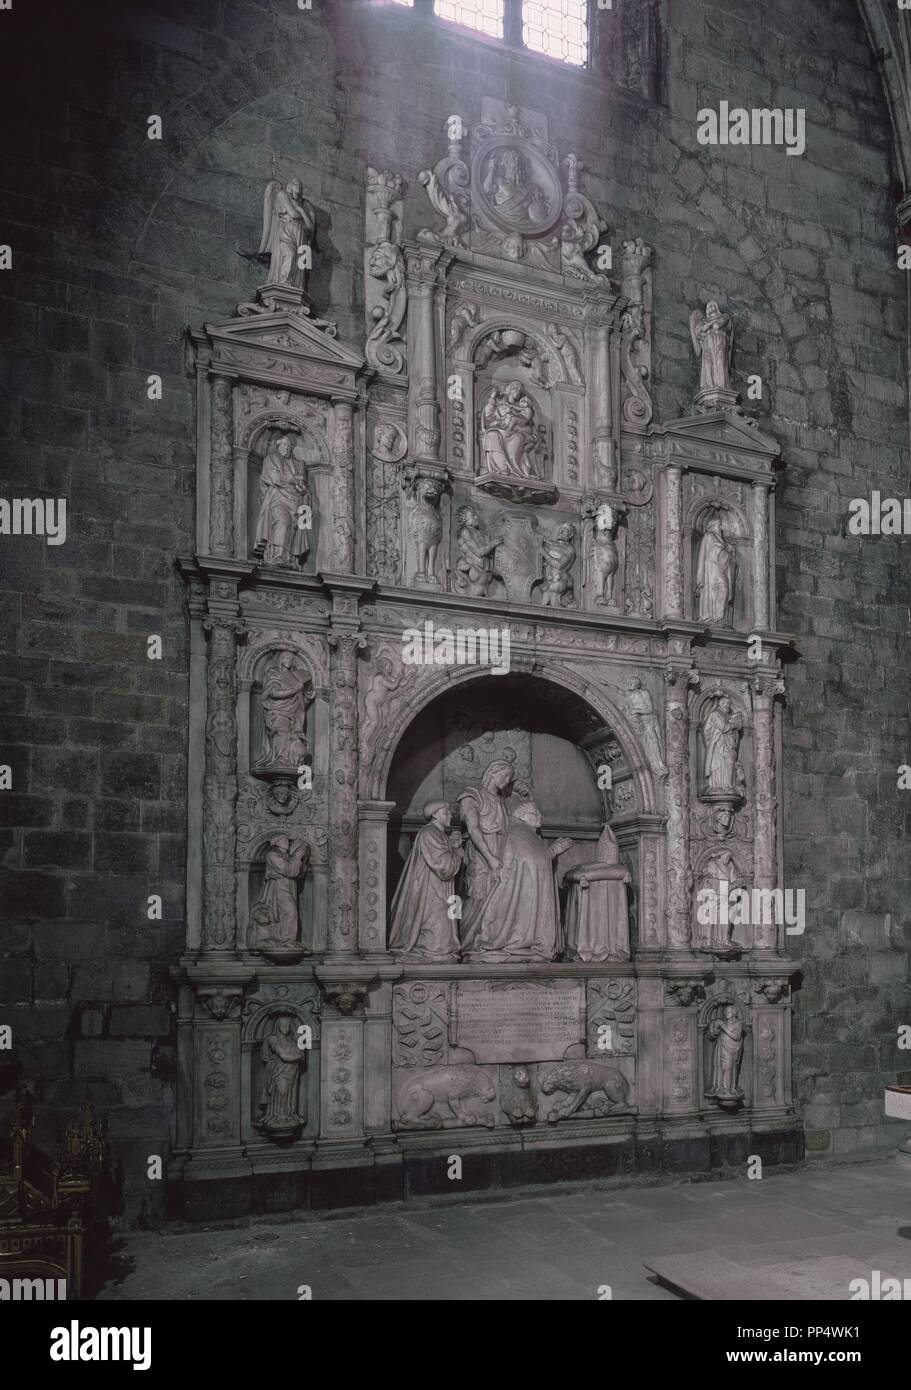 Sepultura DE RODRIGO MERCADO DE ZUAZOLA situado en la Capilla DE LA PIEDAD - 1528/1529 - MARMOL. Autore: Diego de Siloe. Posizione: ST. MICHAEL's Church. ONATE. Guipuzcoa. Spagna. Foto Stock